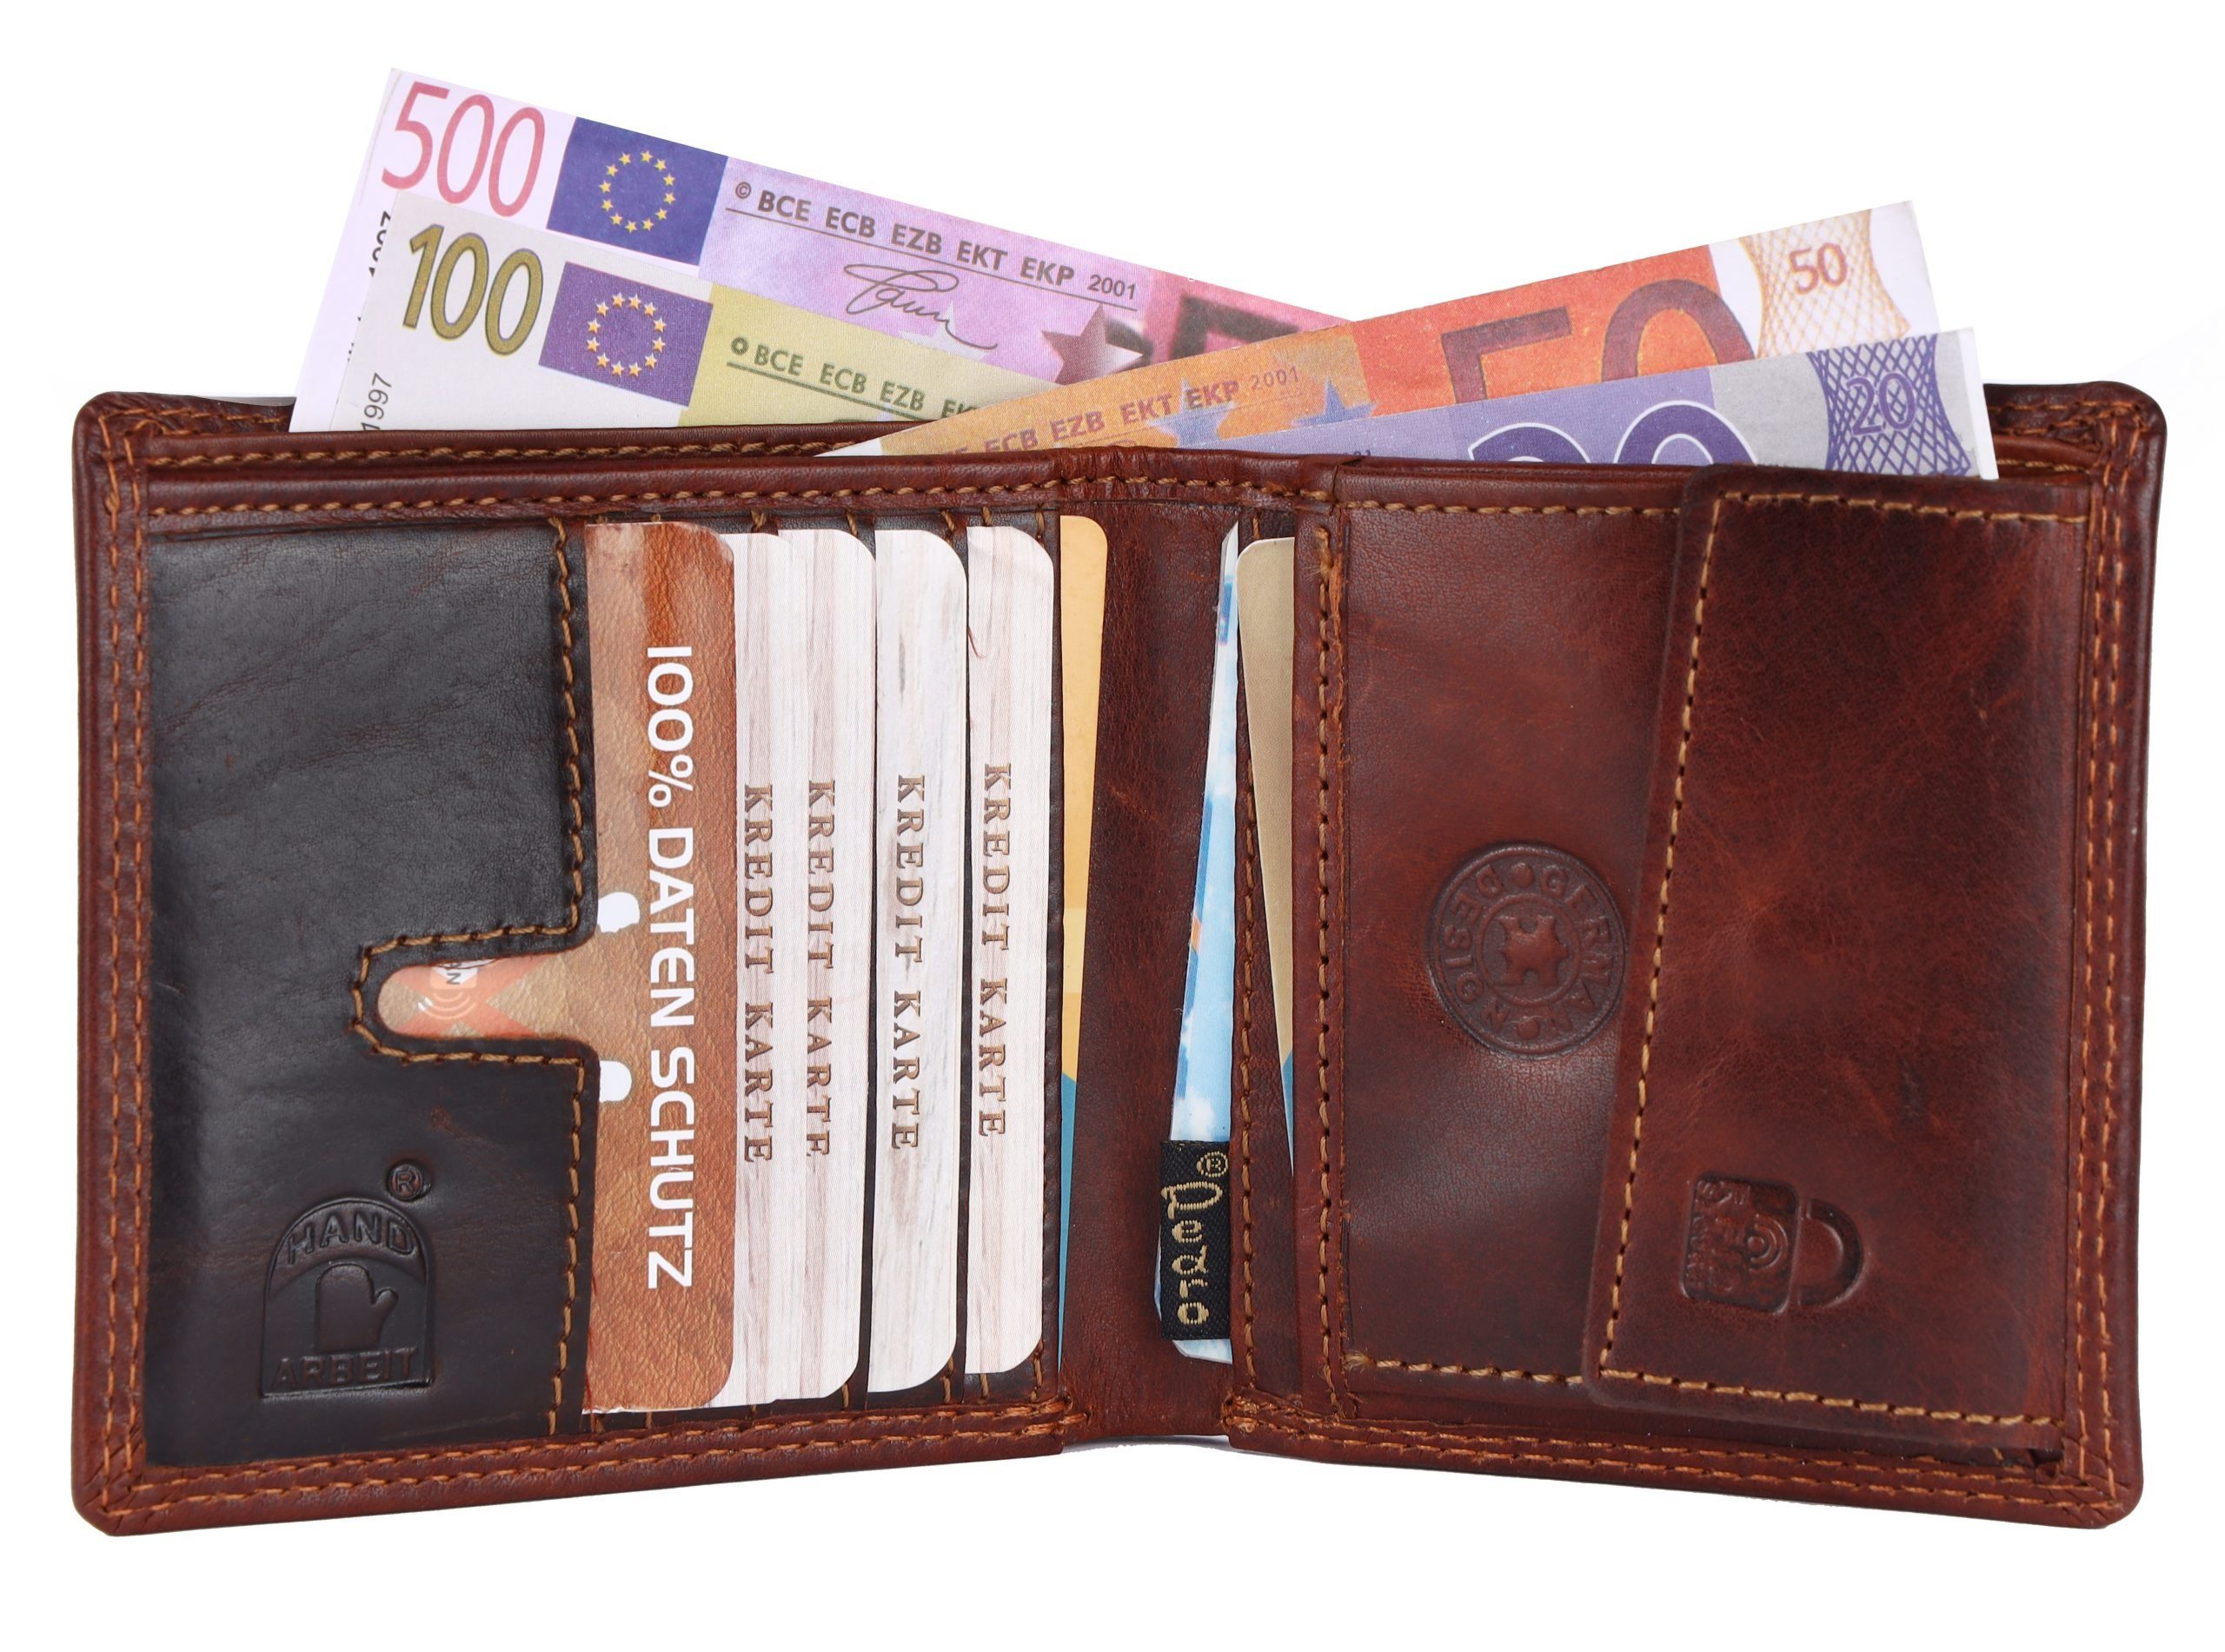 Leder Schutz Börse Geldbeutel Portemonnaie Druckknopfverschluss, Brieftasche RFID Geldbörse SHG Männerbörse, Münzfach, Herren Kreditkartenfächer,